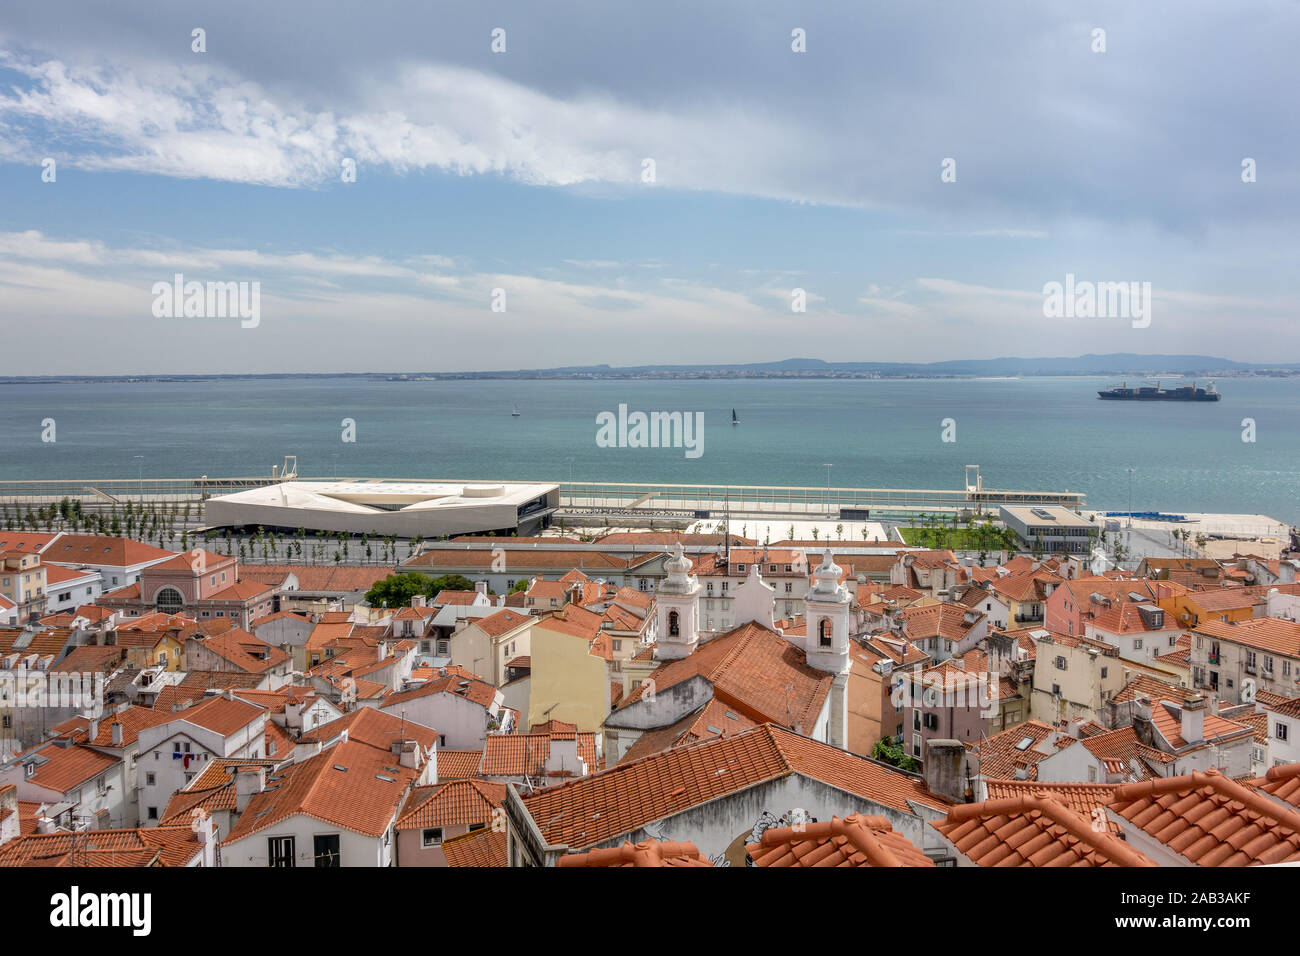 Bâtiment du terminal du port de croisière de Lisbonne sur le Tage Portugal, vu du célèbre point de vue de Miradouro de Santa Luzia Banque D'Images